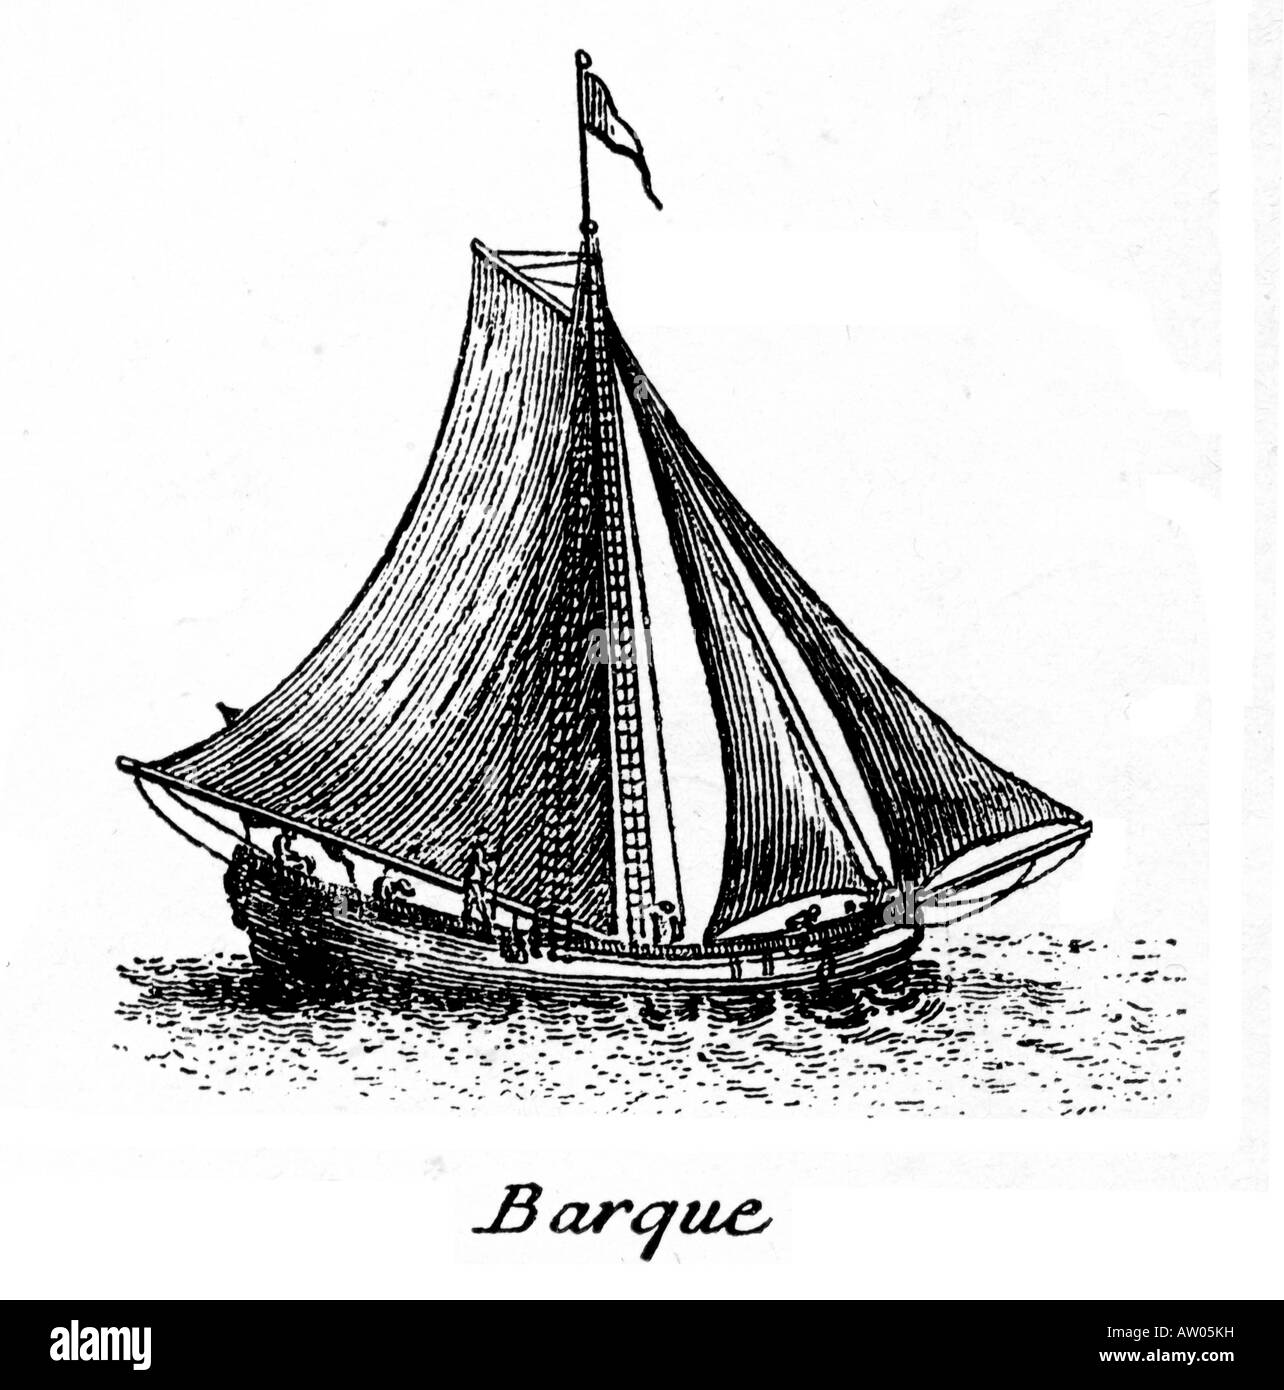 La petite barque bateau à bord duquel les pirates et les flibustiers dans les caraïbes vers 1700 pour attaquer les navires trésor espagnol Banque D'Images